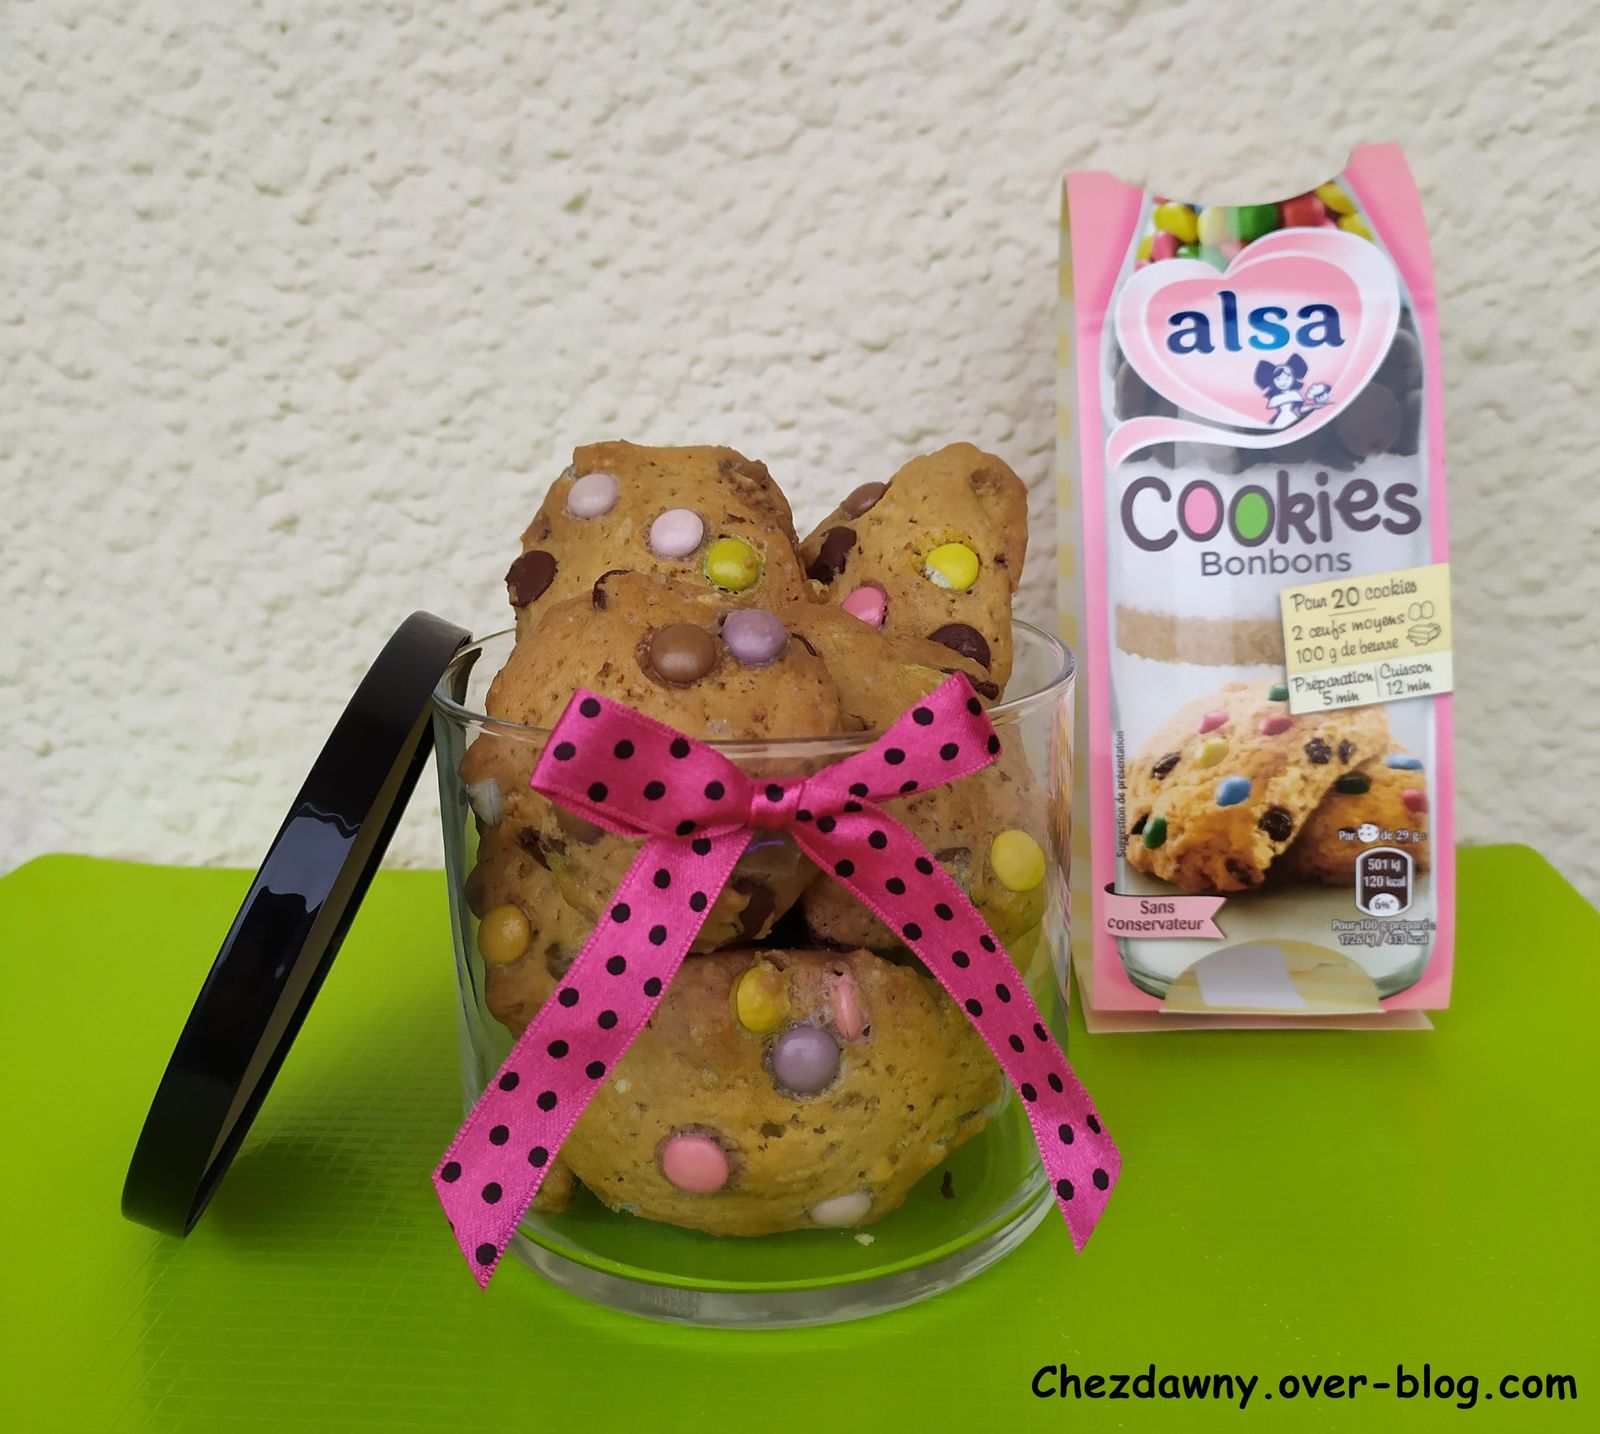 Cookies bonbons - Alsa - Chez Dawny